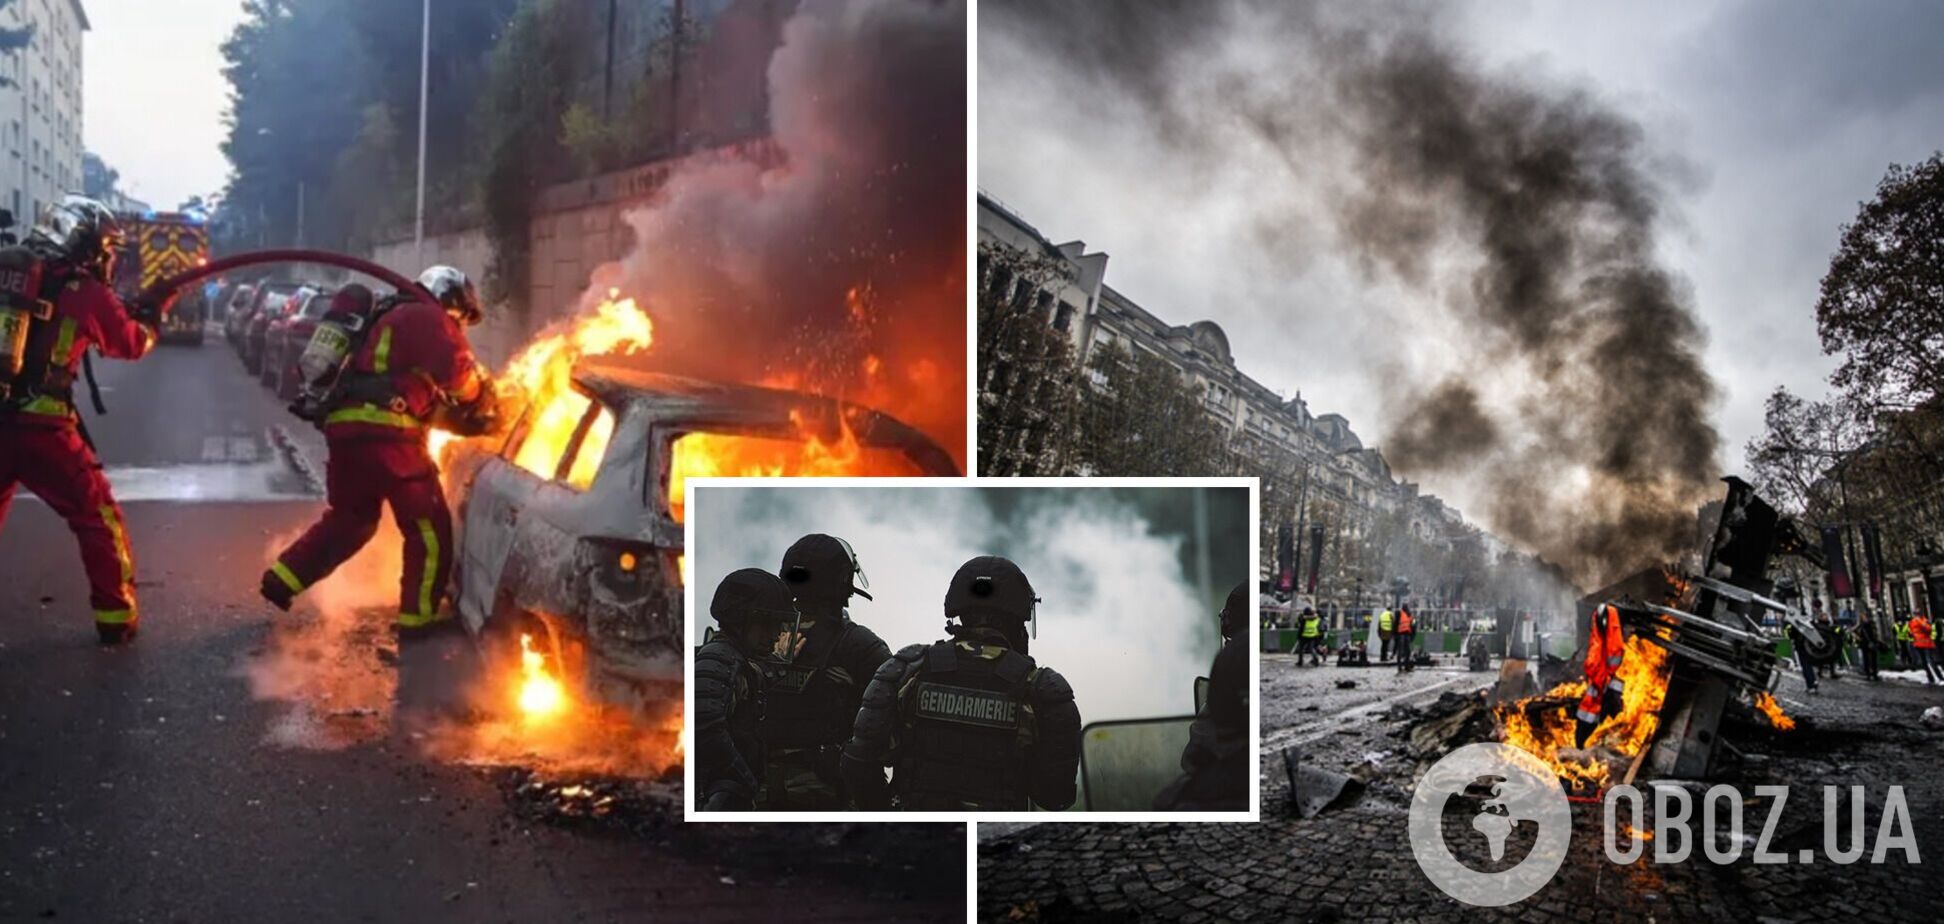 Протестующие начали жечь авто: во Франции не стихают акции после убийства полицией подростка. Фото и видео